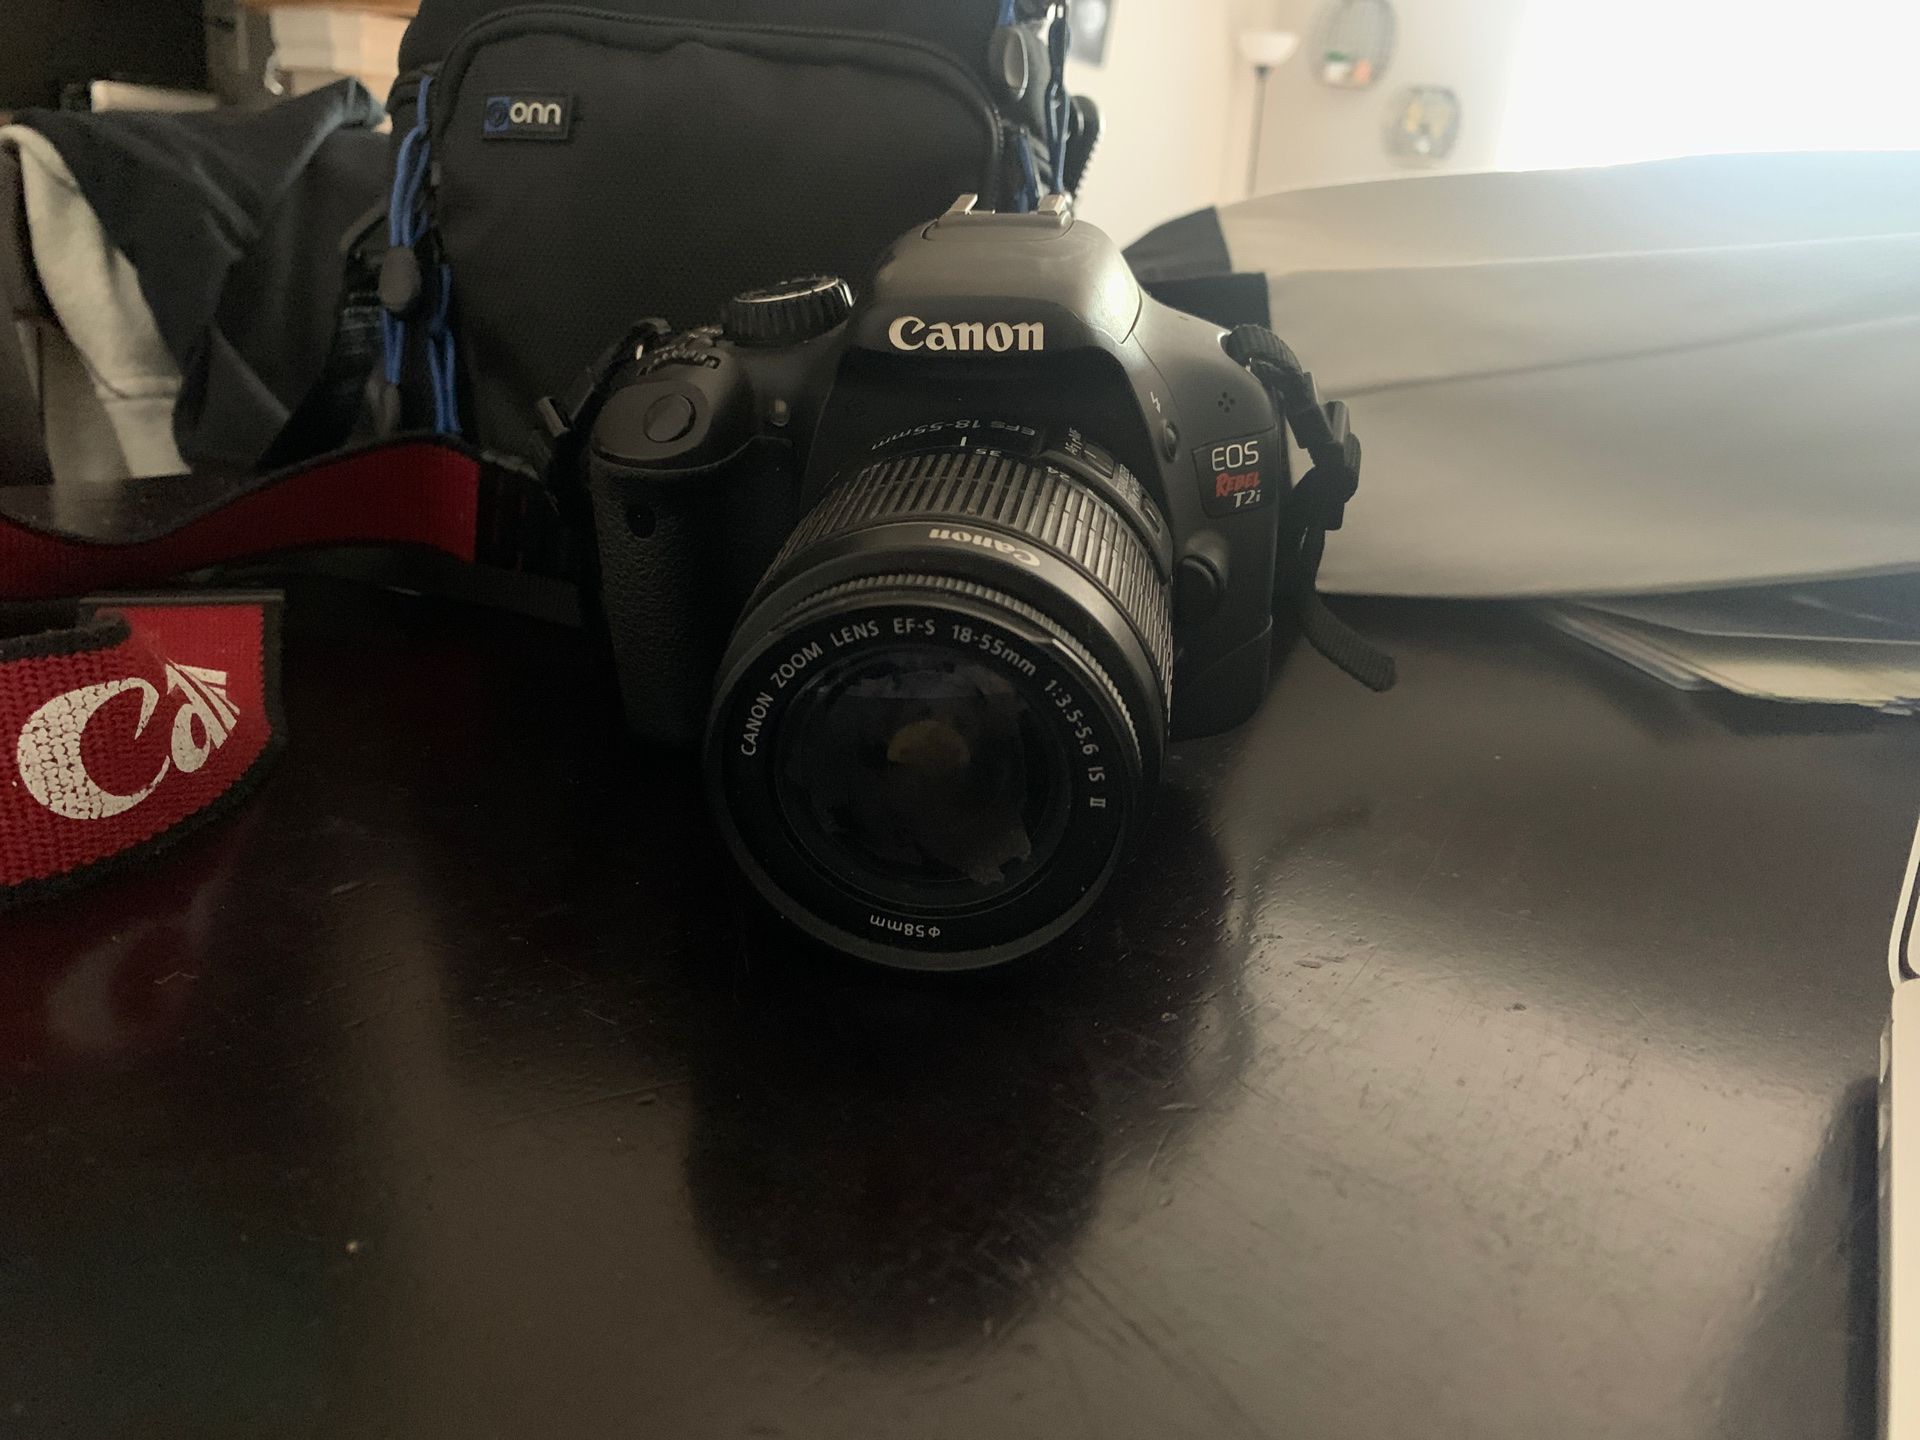 Canon EOS T2i camera